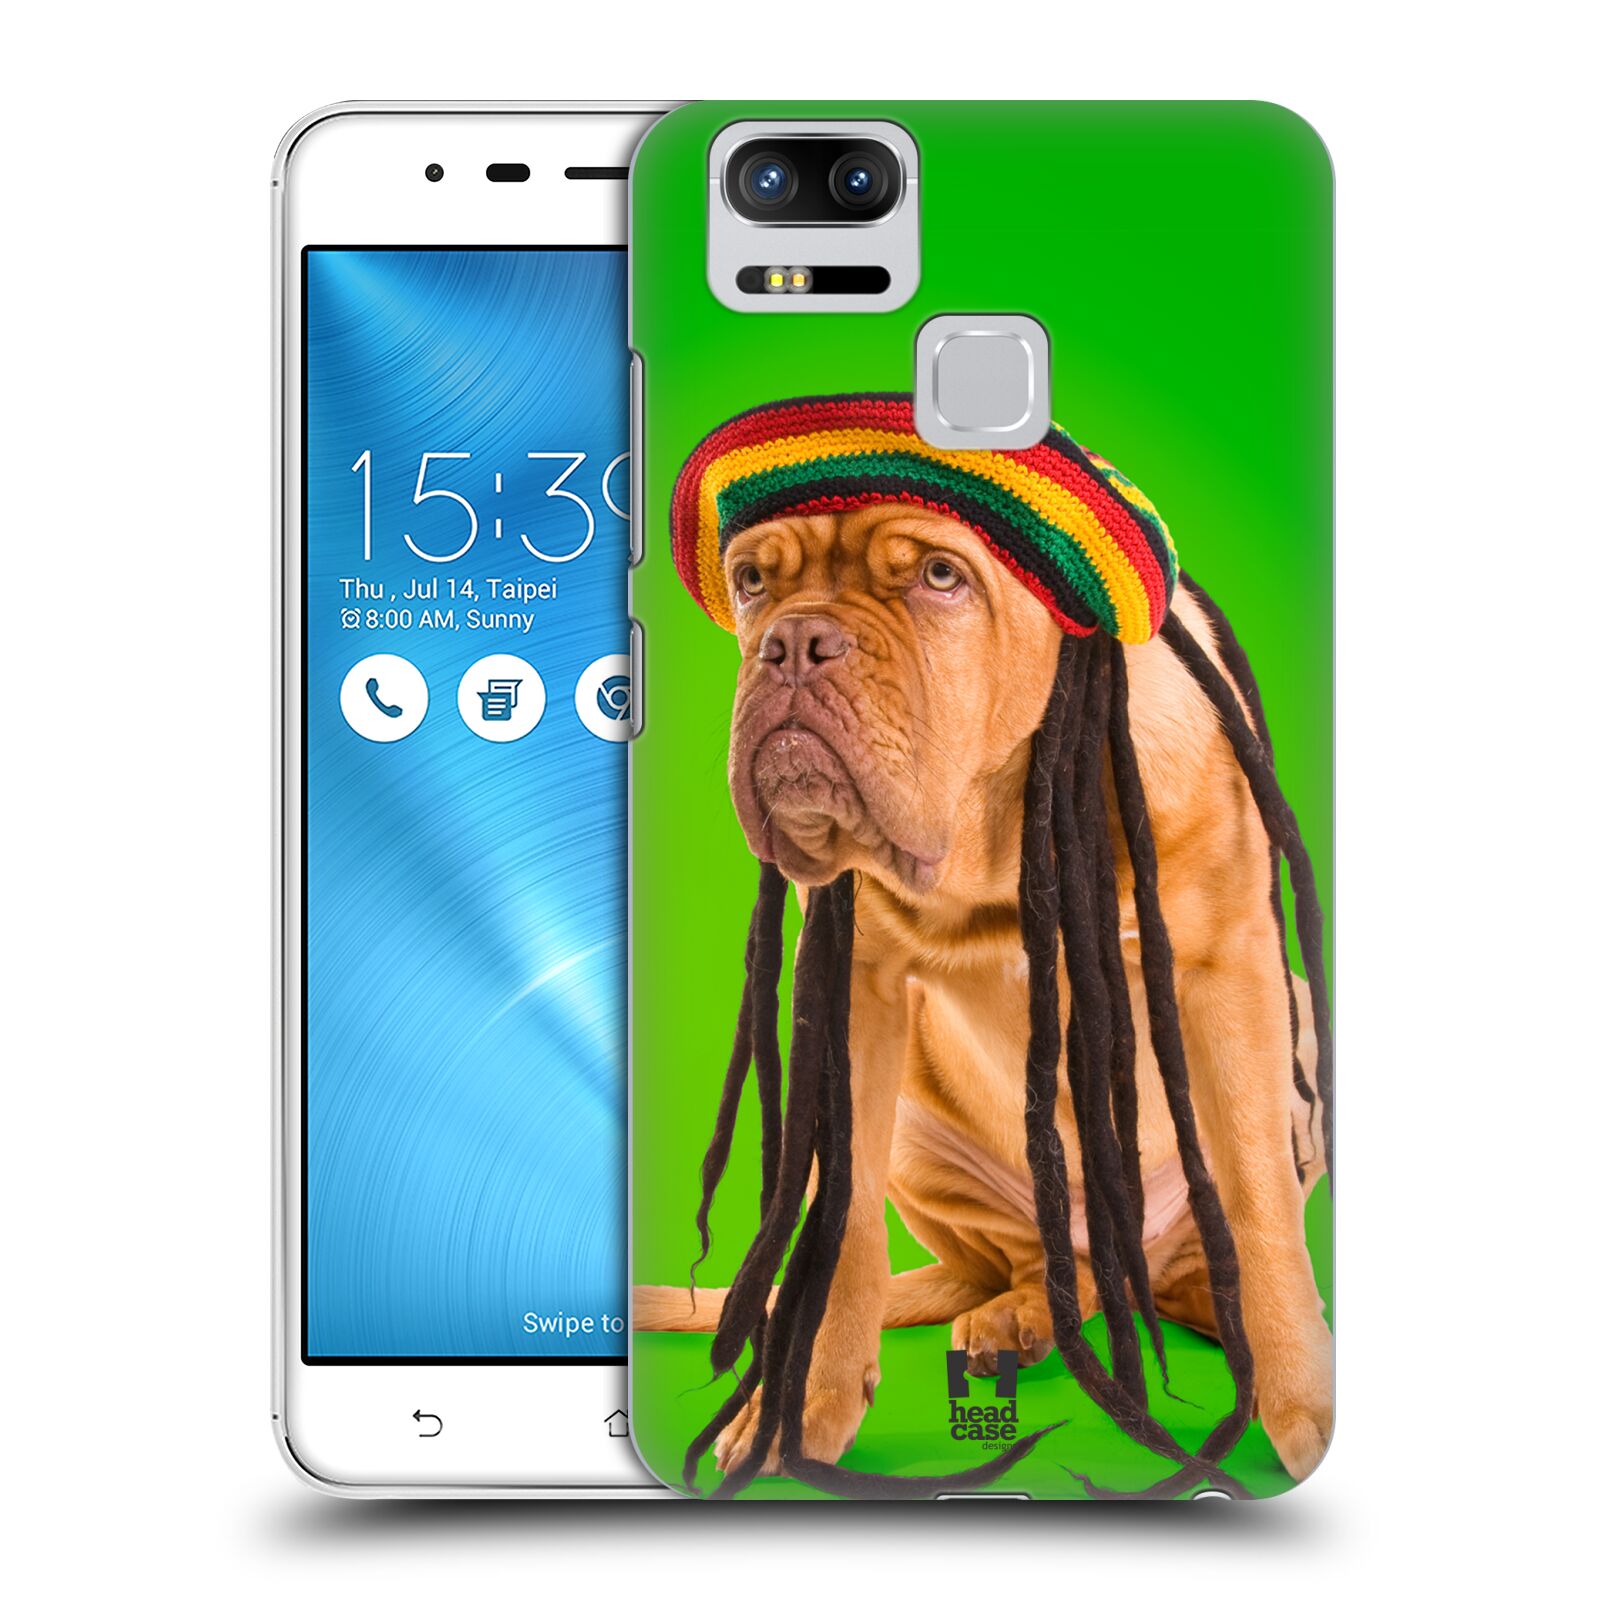 HEAD CASE plastový obal na mobil Asus Zenfone 3 Zoom ZE553KL vzor Legrační zvířátka pejsek dredy Rastafarián